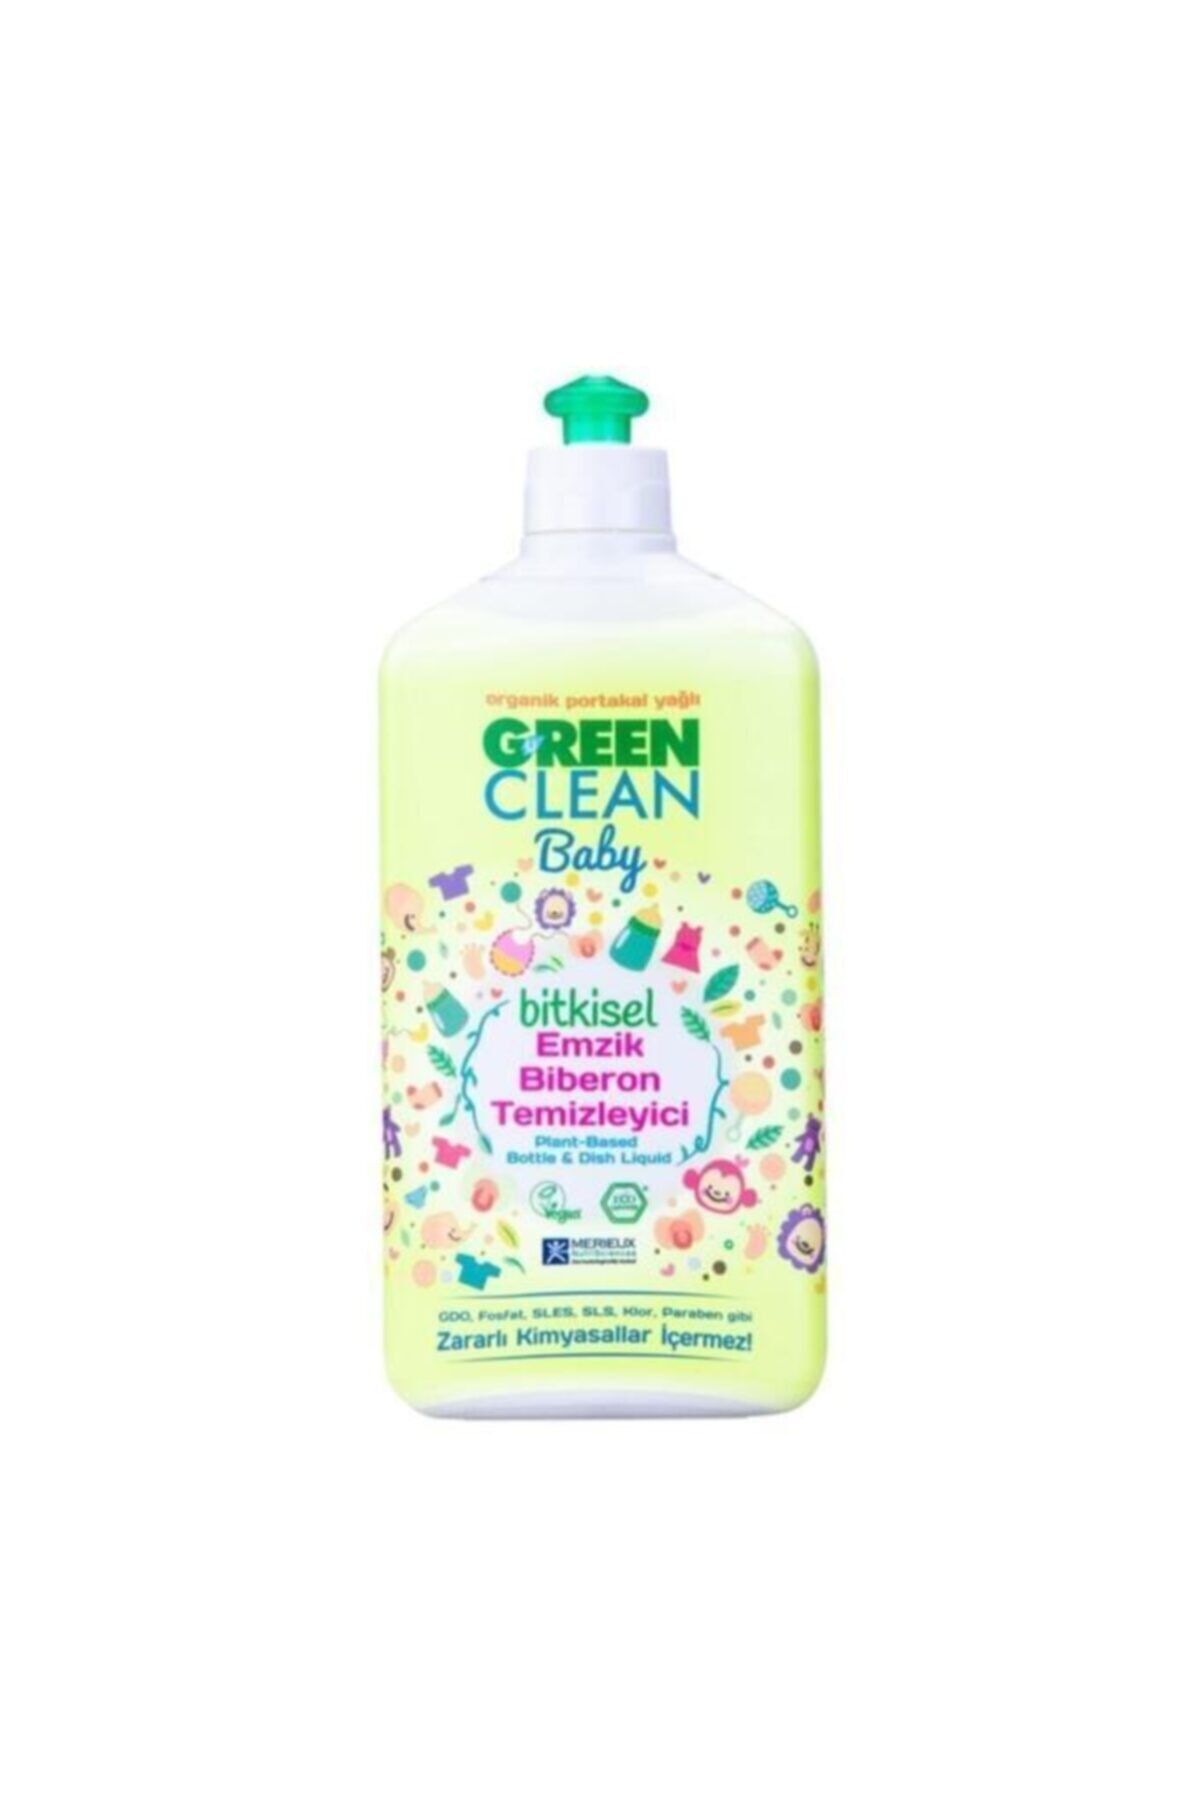 Genel Markalar Green Clean Doğal Bitkisel Emzik Biberon Temizleyici 500ml Tm-17